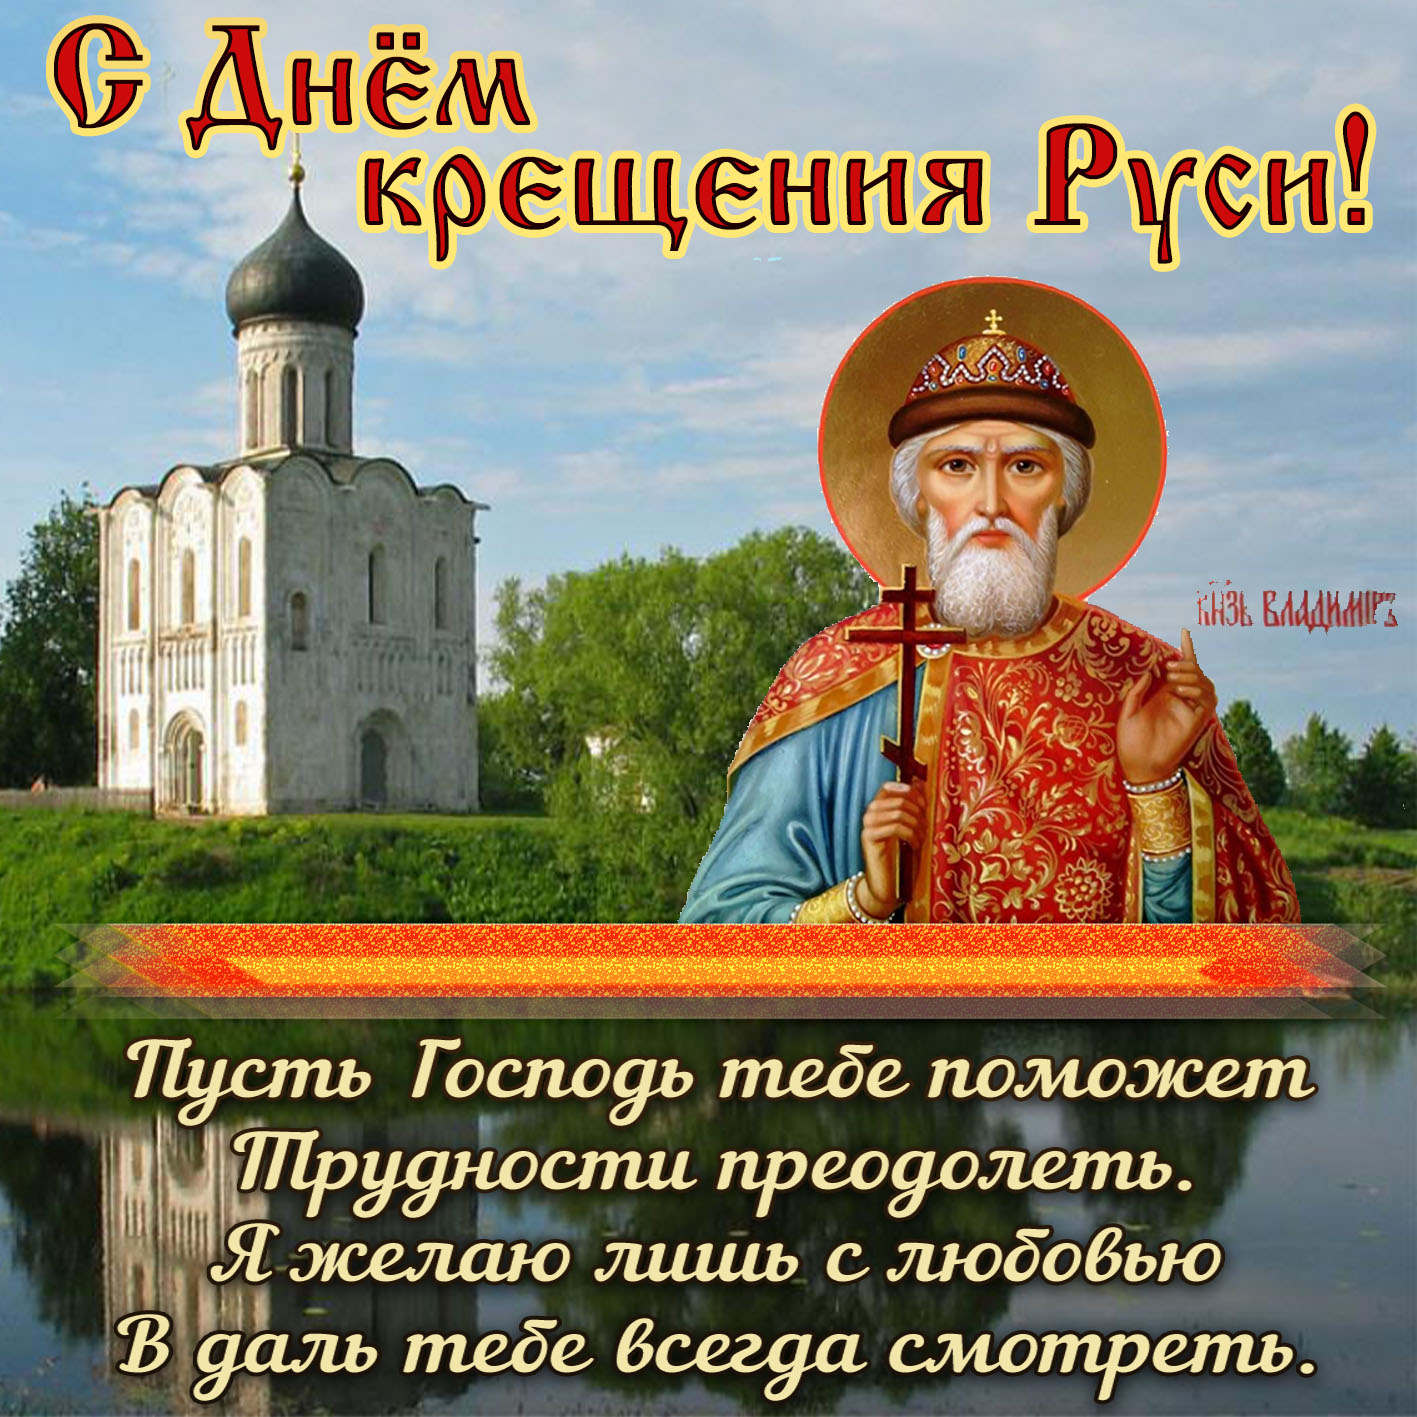 Картинка с князем Владимиром на фоне храма.